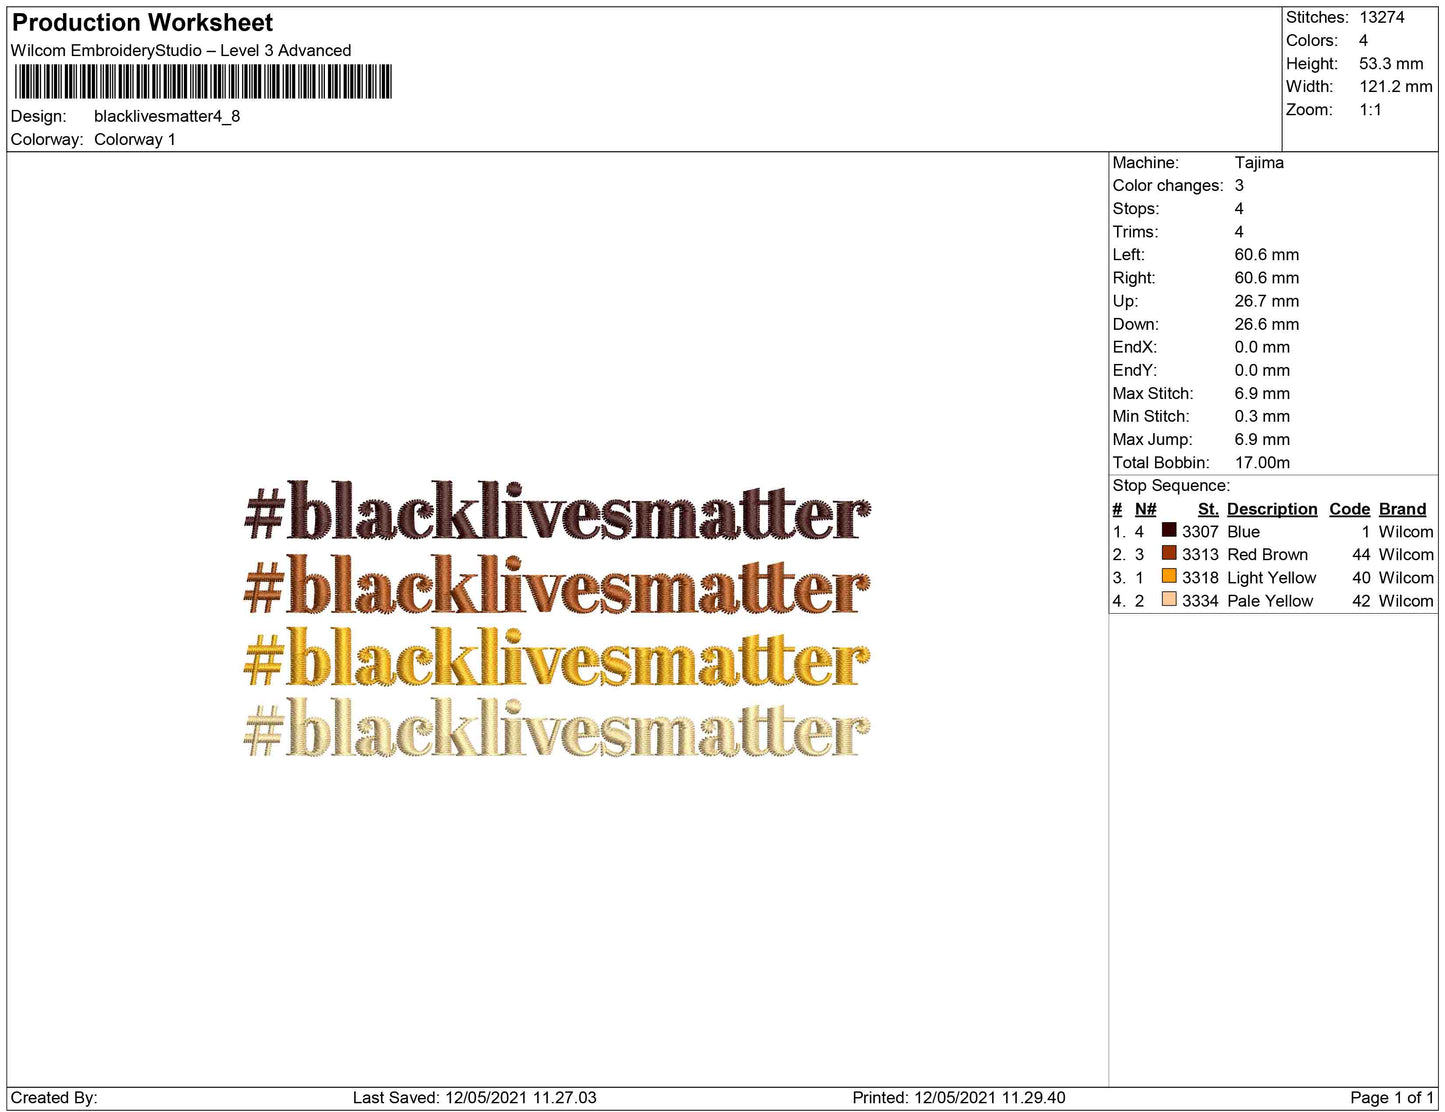 Black Lives matter